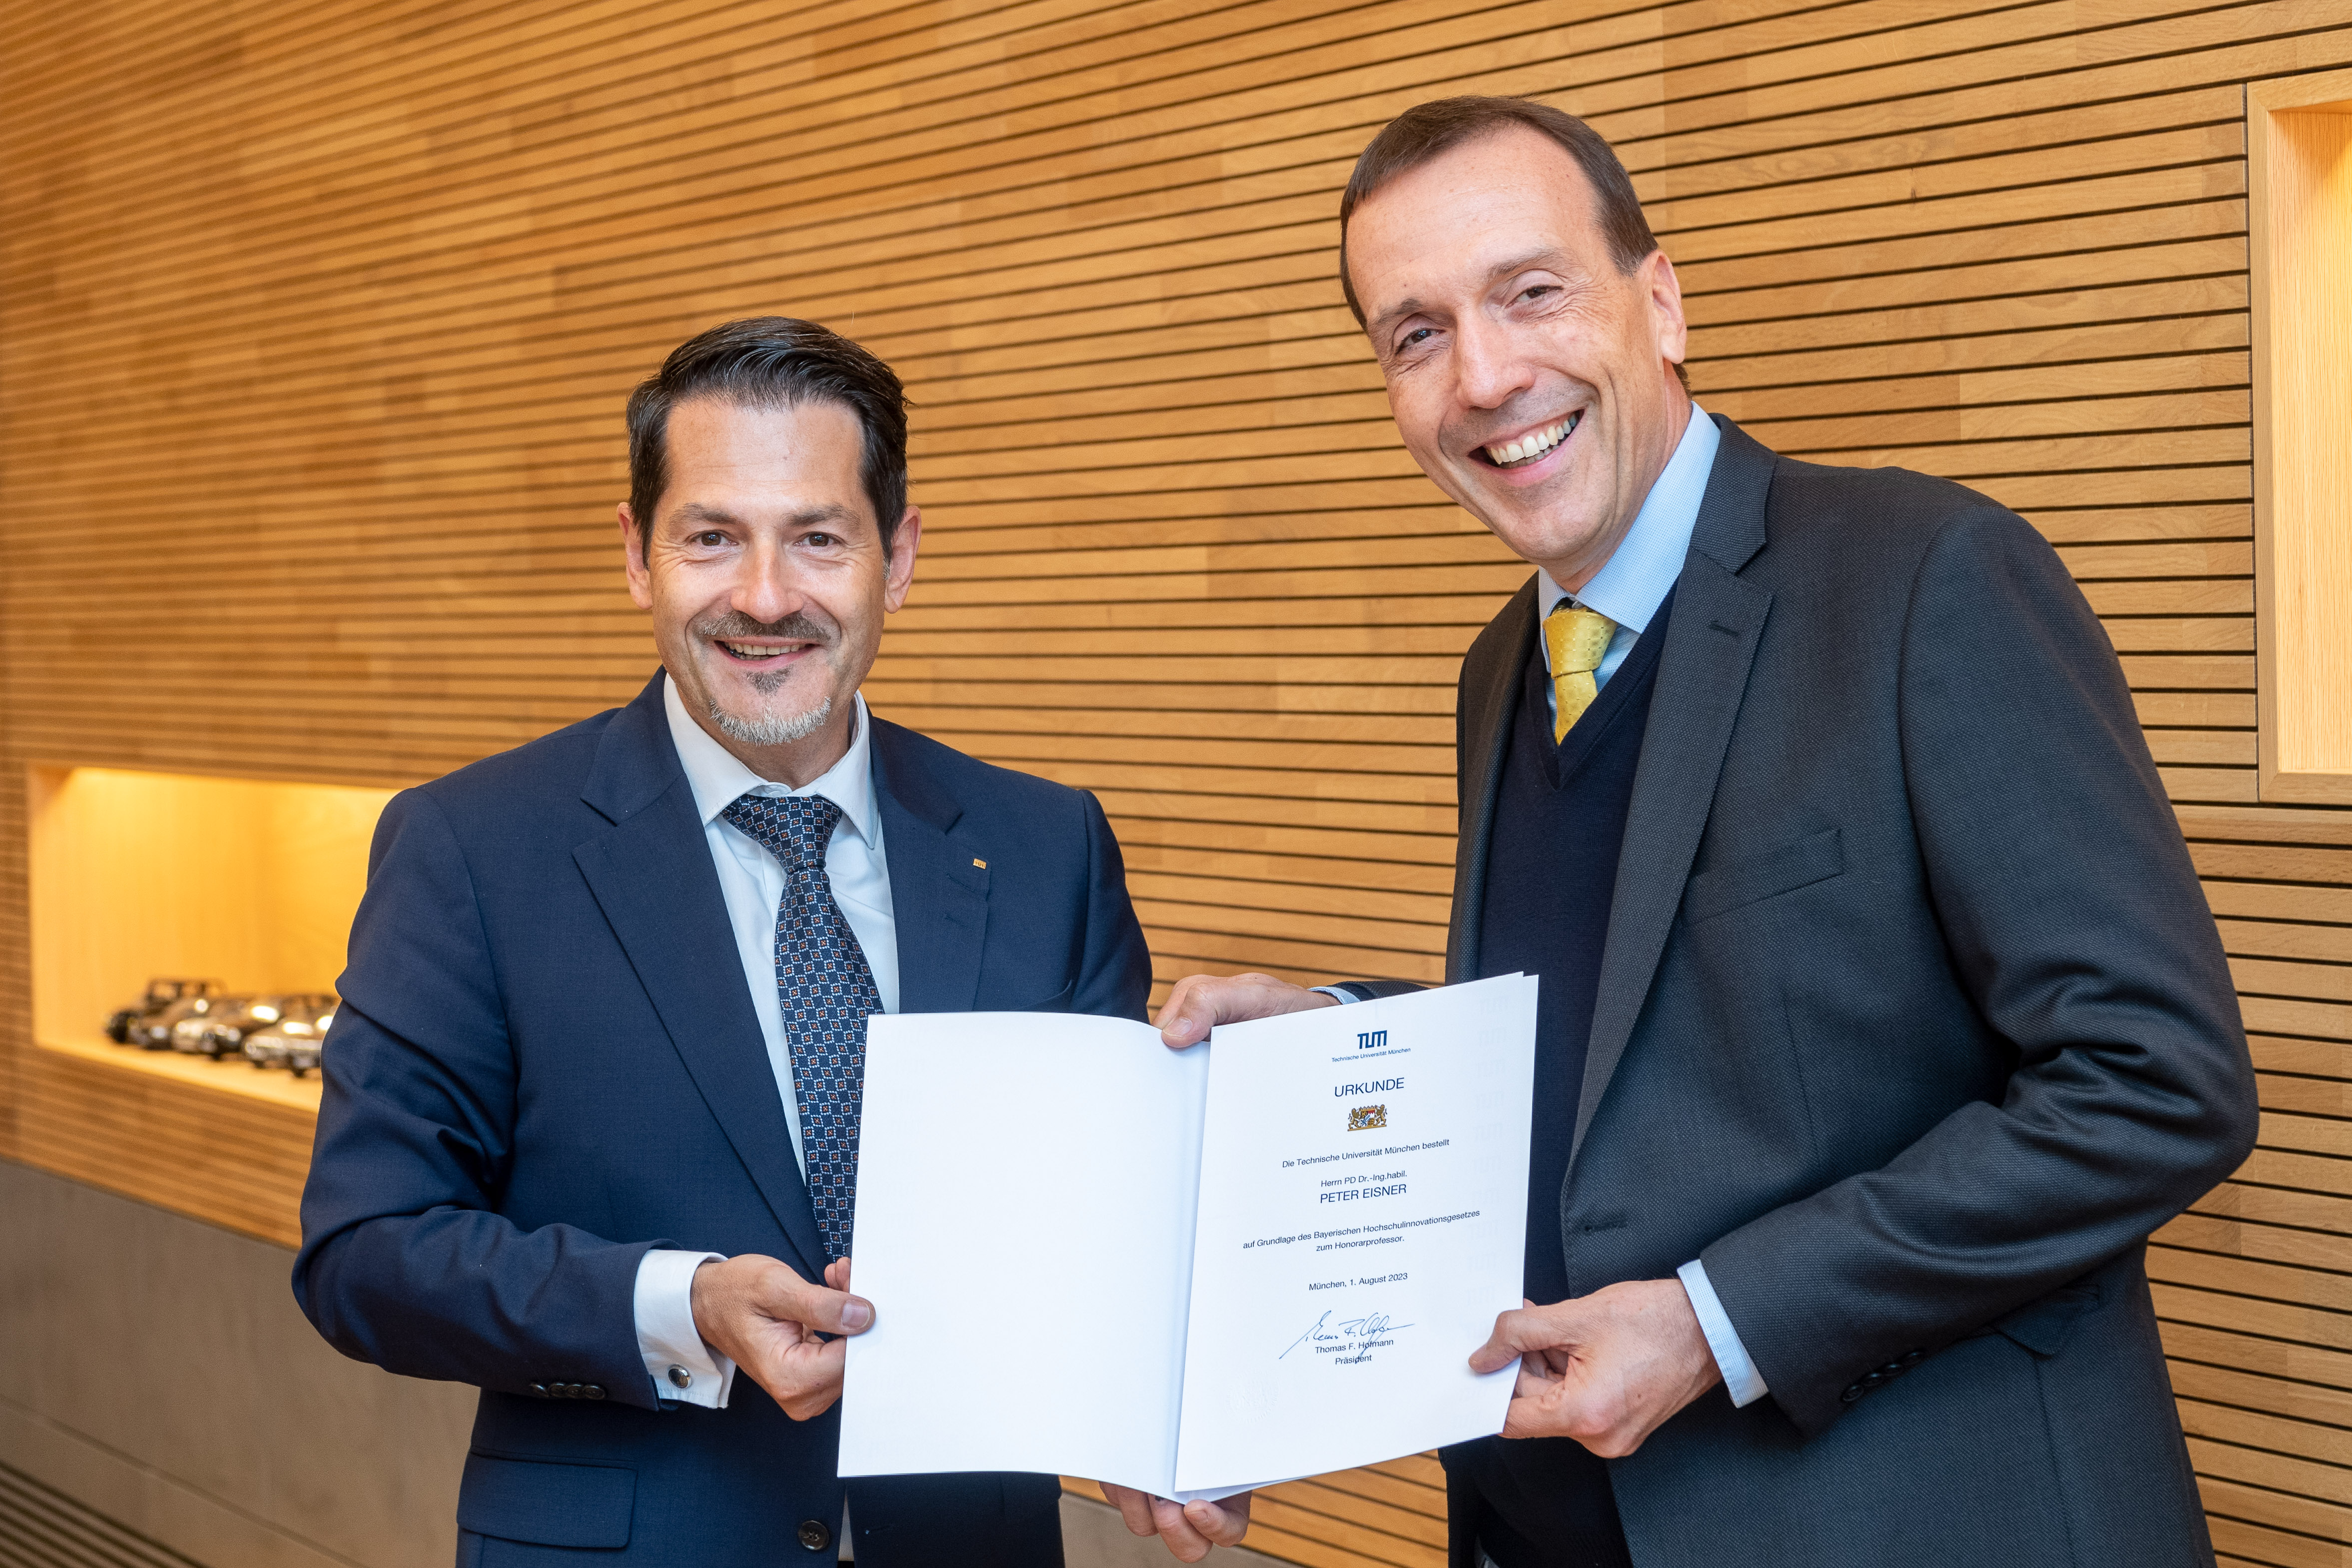 Der Präsident der Technischen Universität München, Prof. Dr. Thomas Hofmann (links im Bild), überreicht Prof. Dr. Peter Eisner die Urkunde zur Ernennung zum Honorarprofessor.